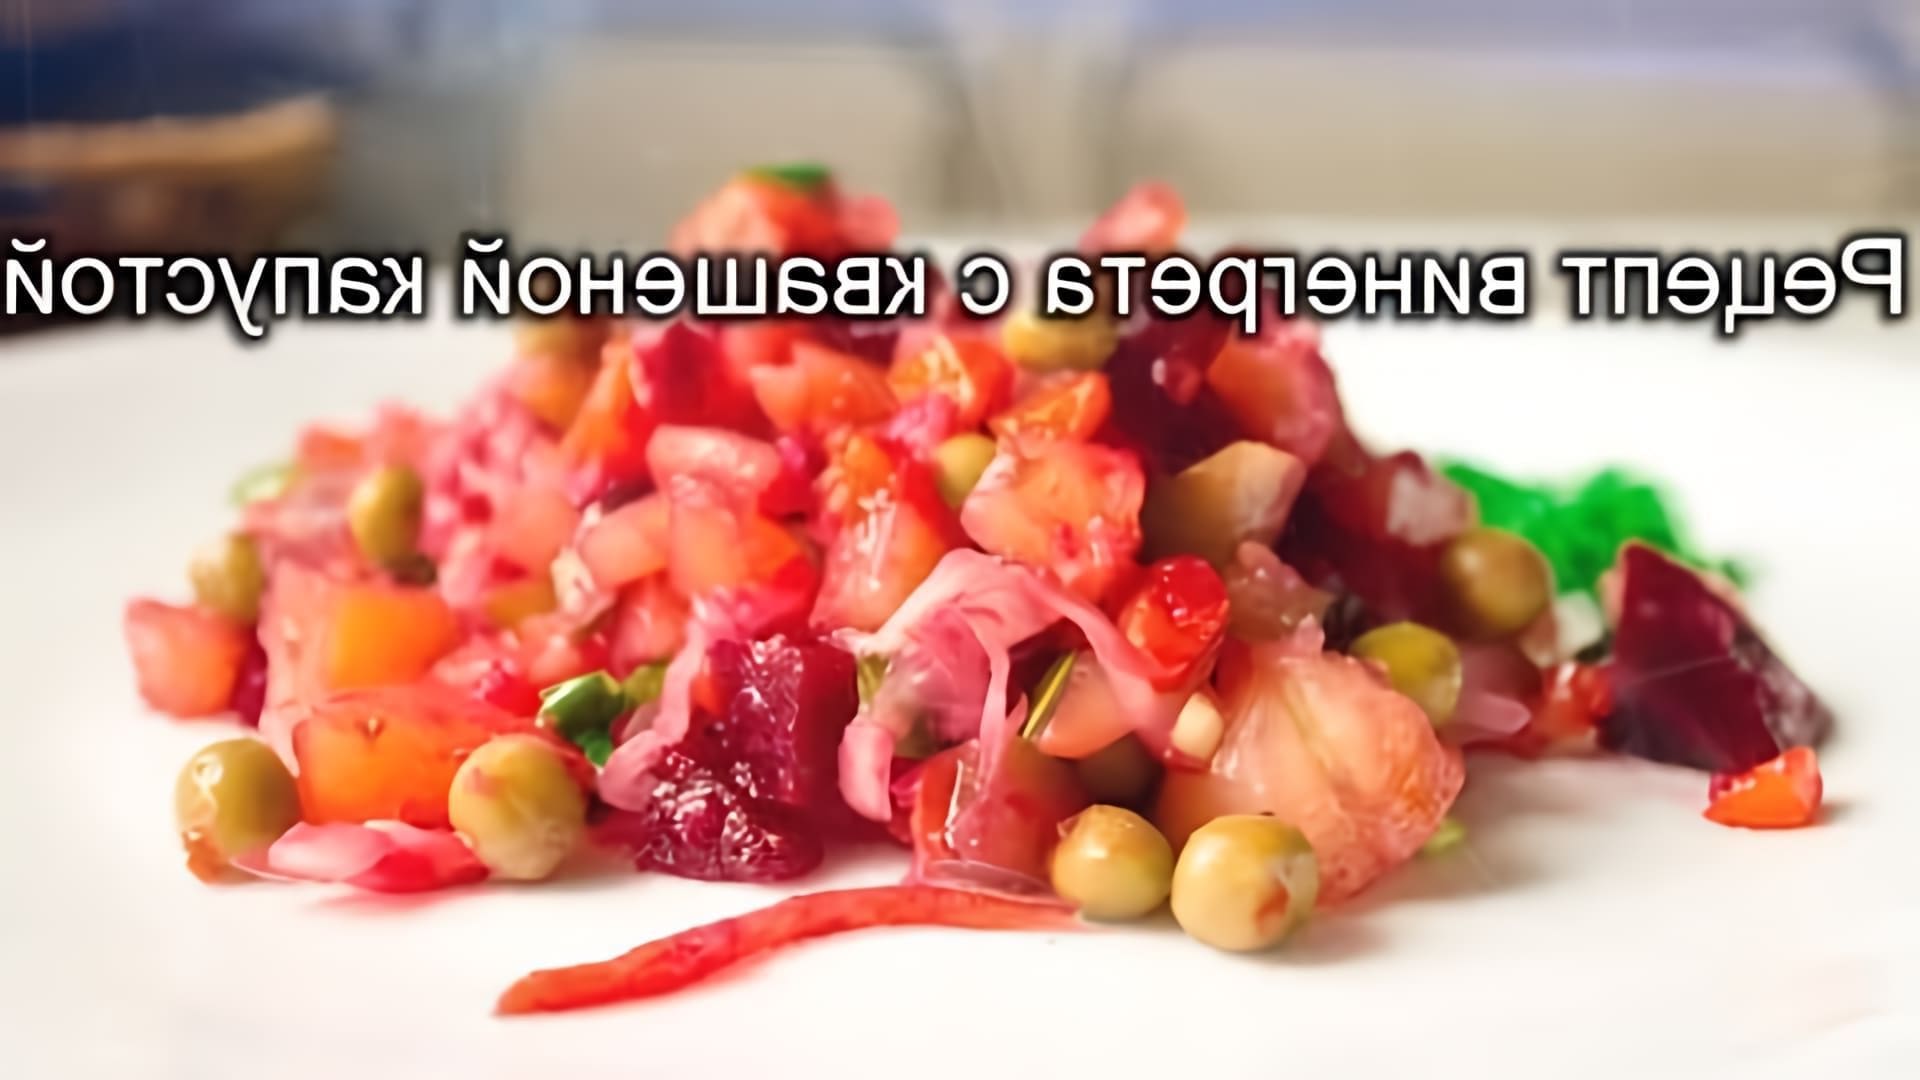 В этом видео демонстрируется рецепт приготовления винегрета с квашеной капустой